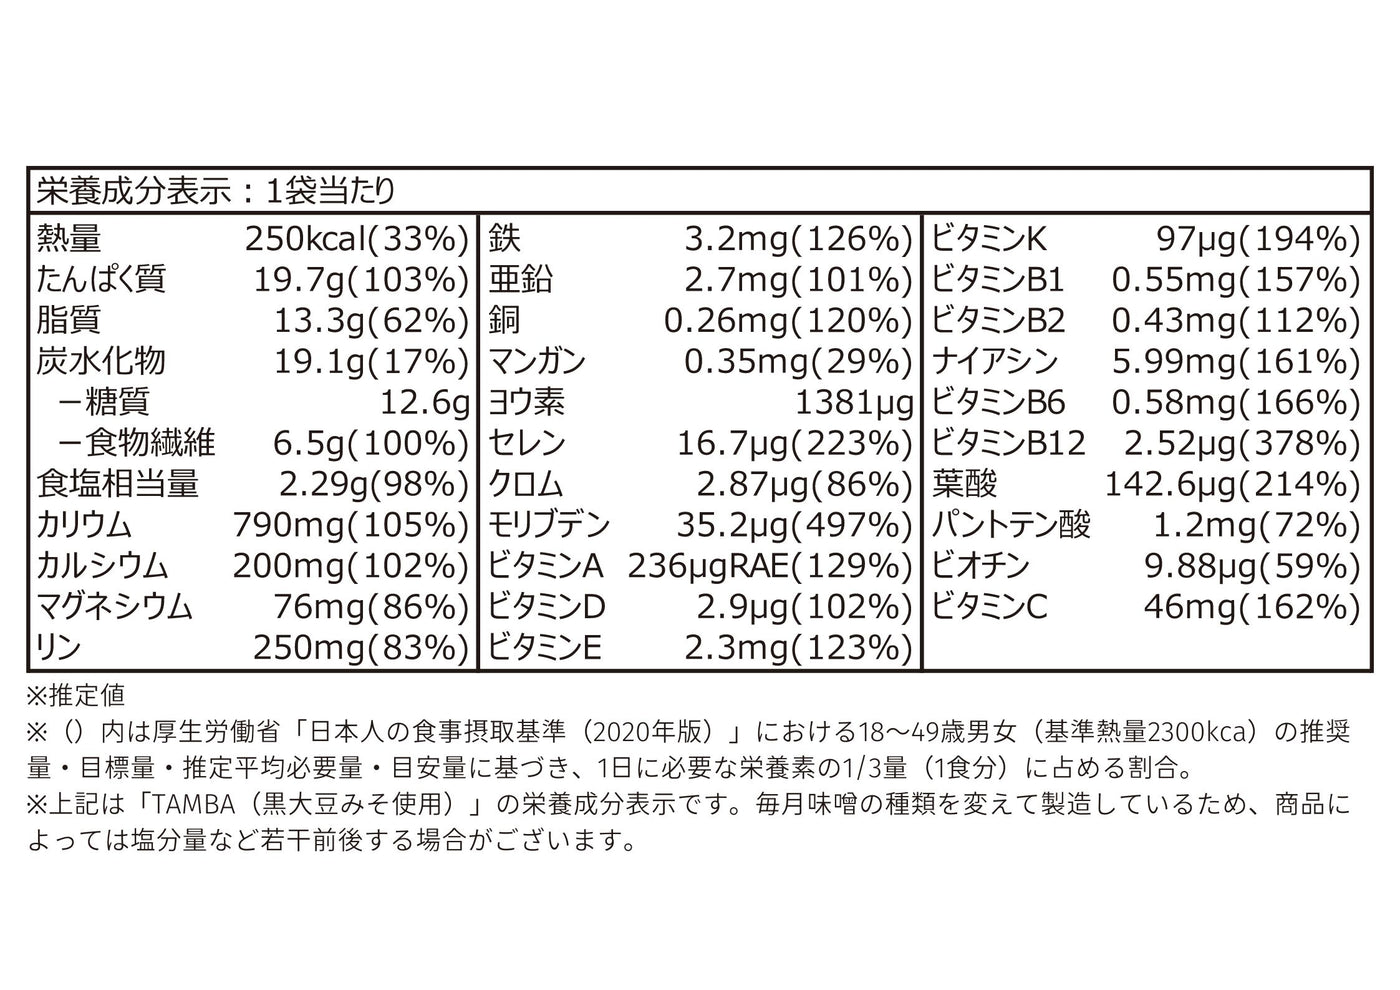 【定期】MISOVATION 12食セット